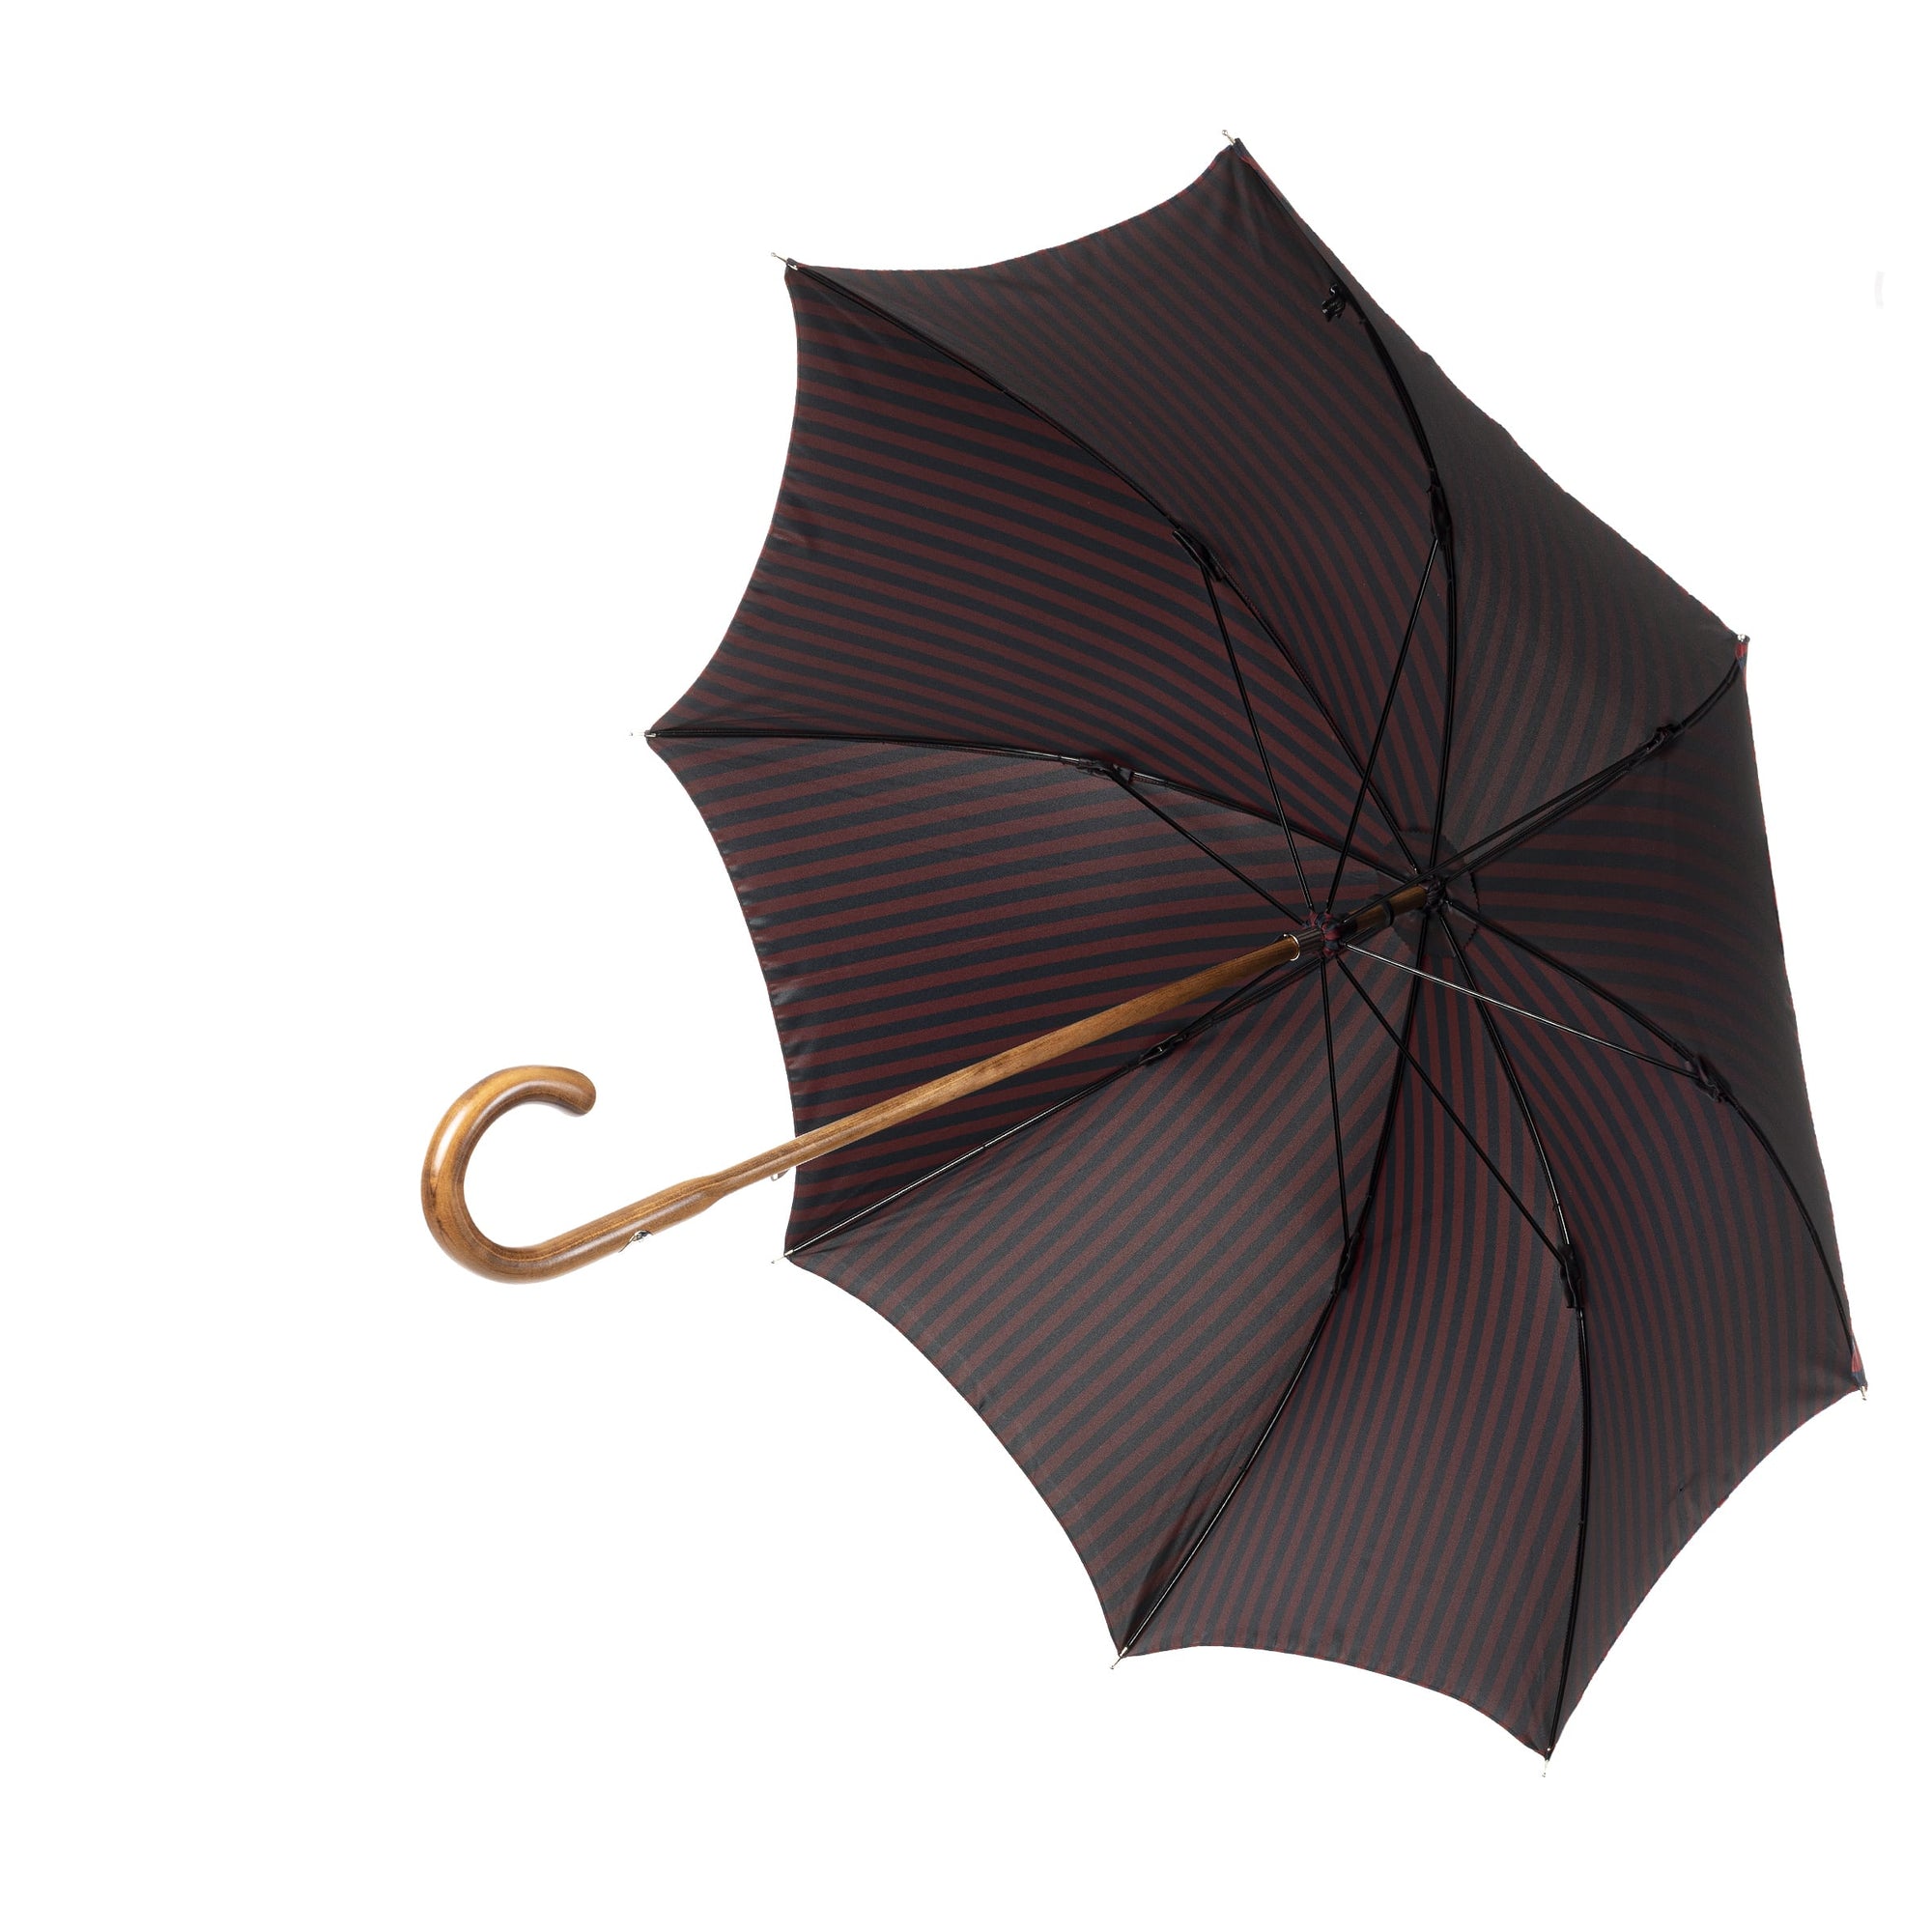 Canadian Maple Umbrella